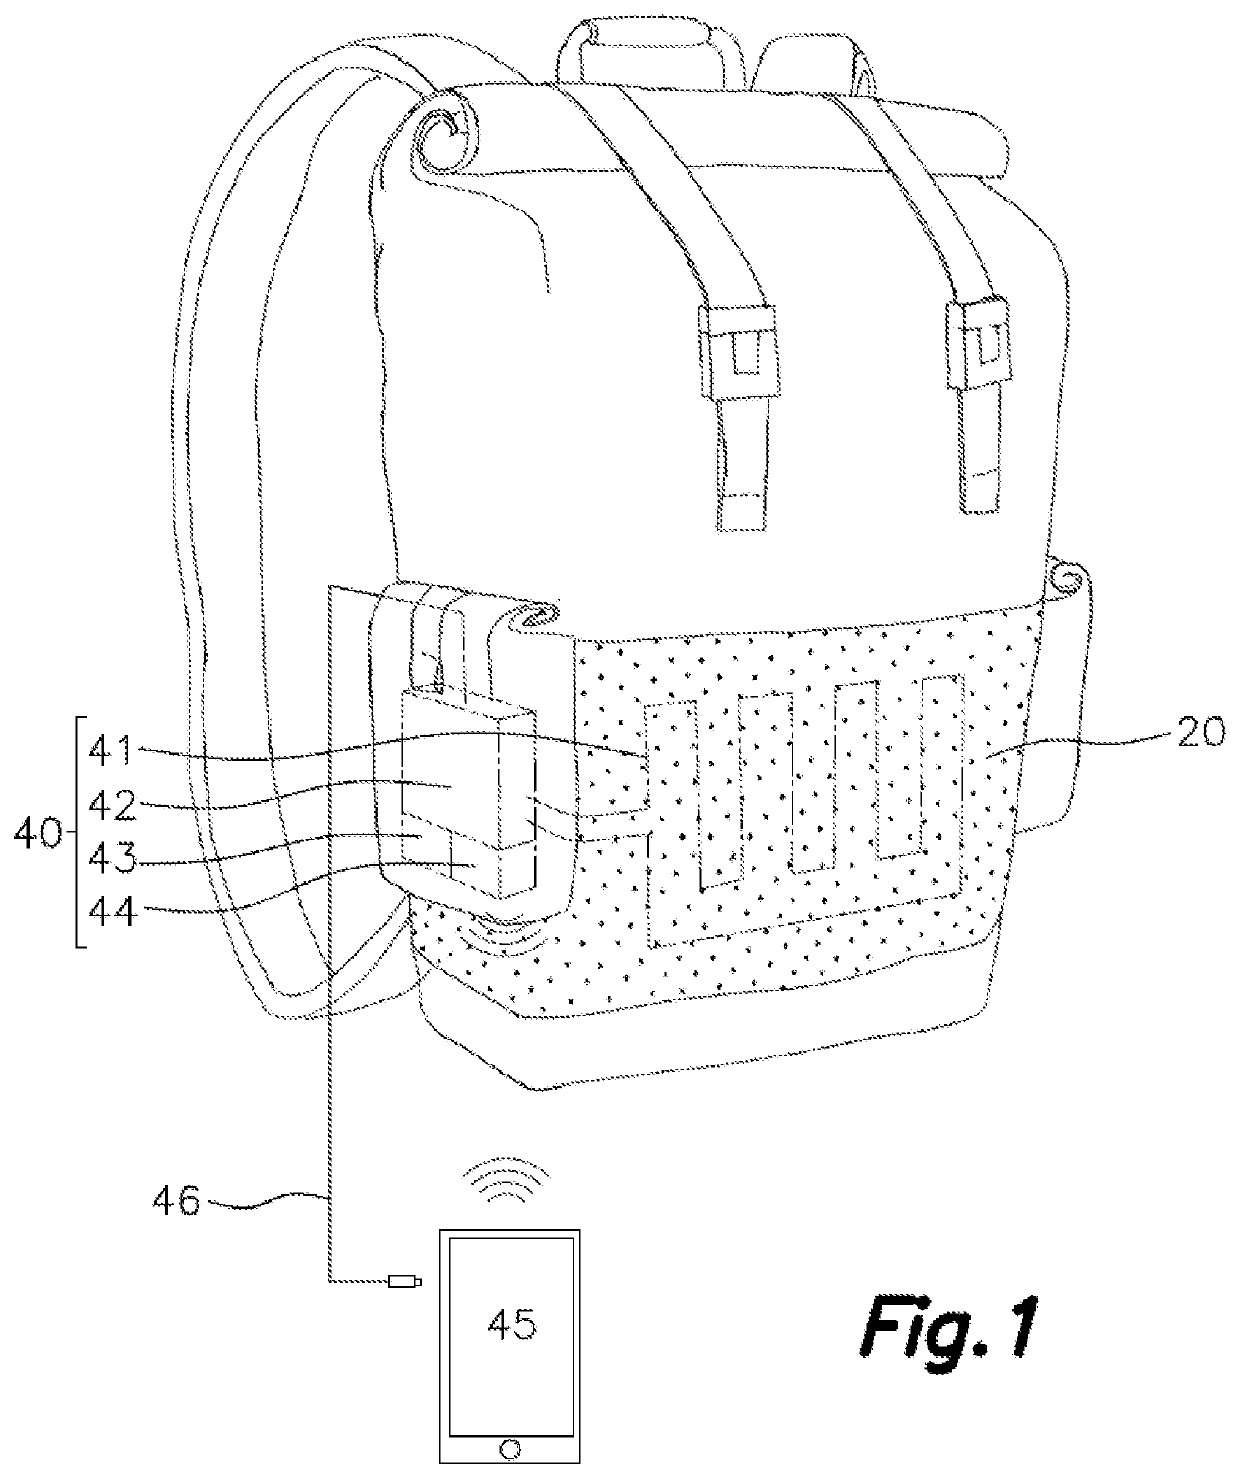 Waterproof, breathable bag with no interior condensation